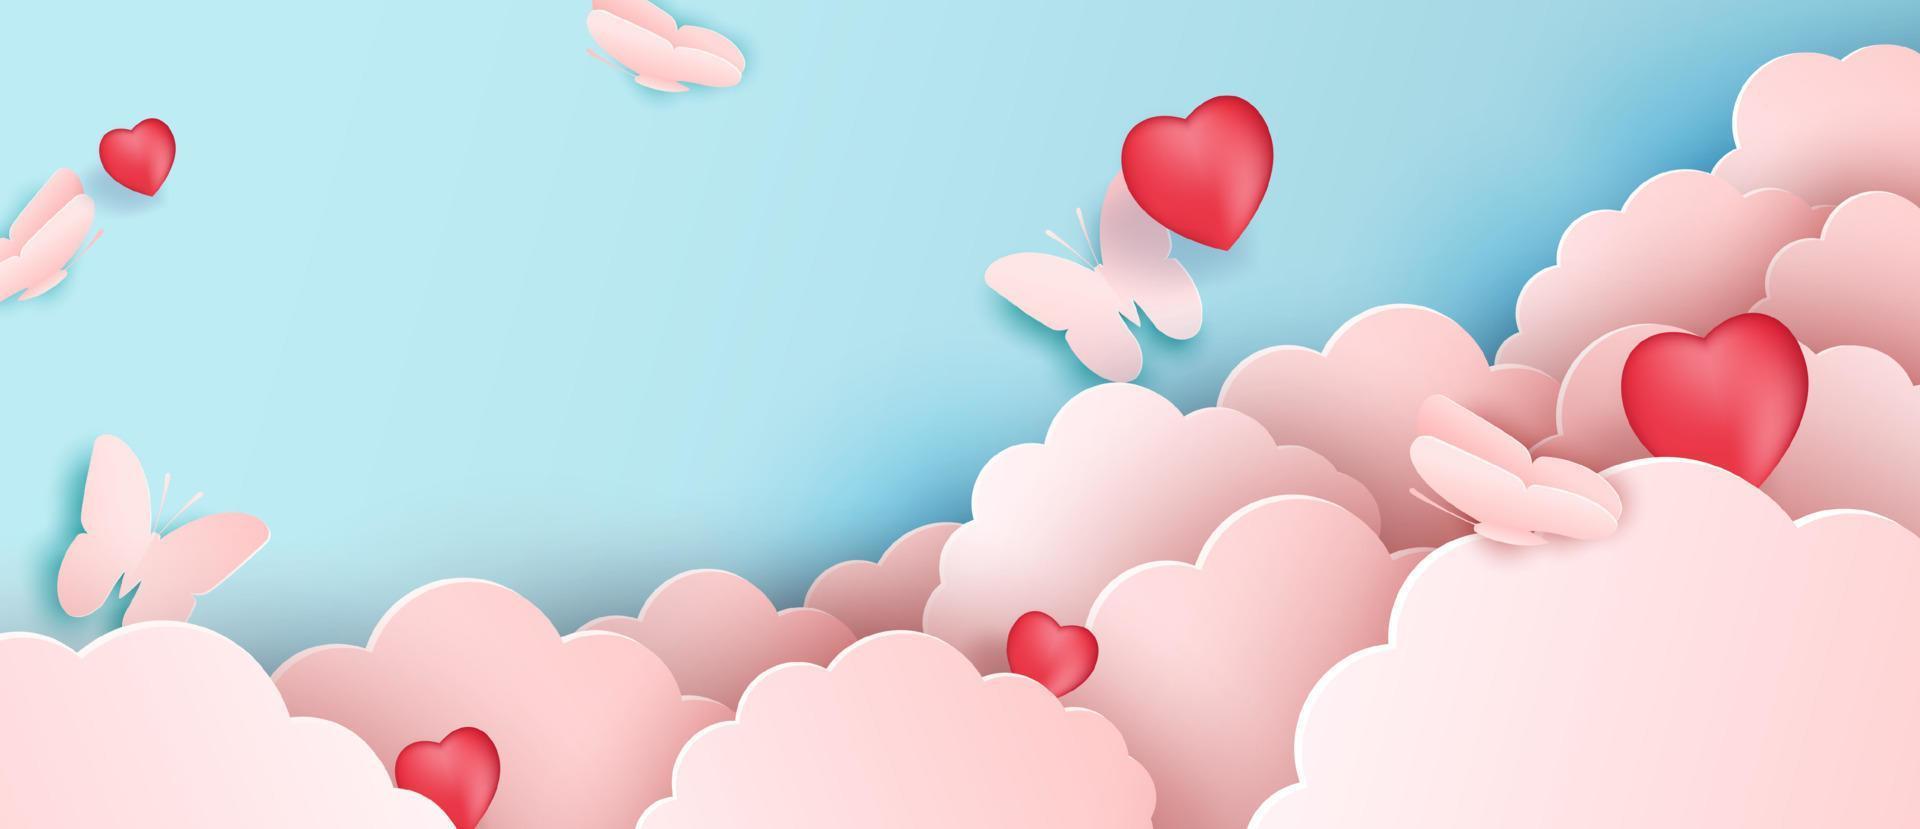 diseño de corte de papel, nubes de papel vectorial con mariposas. nube rosa y fondo azul. vector